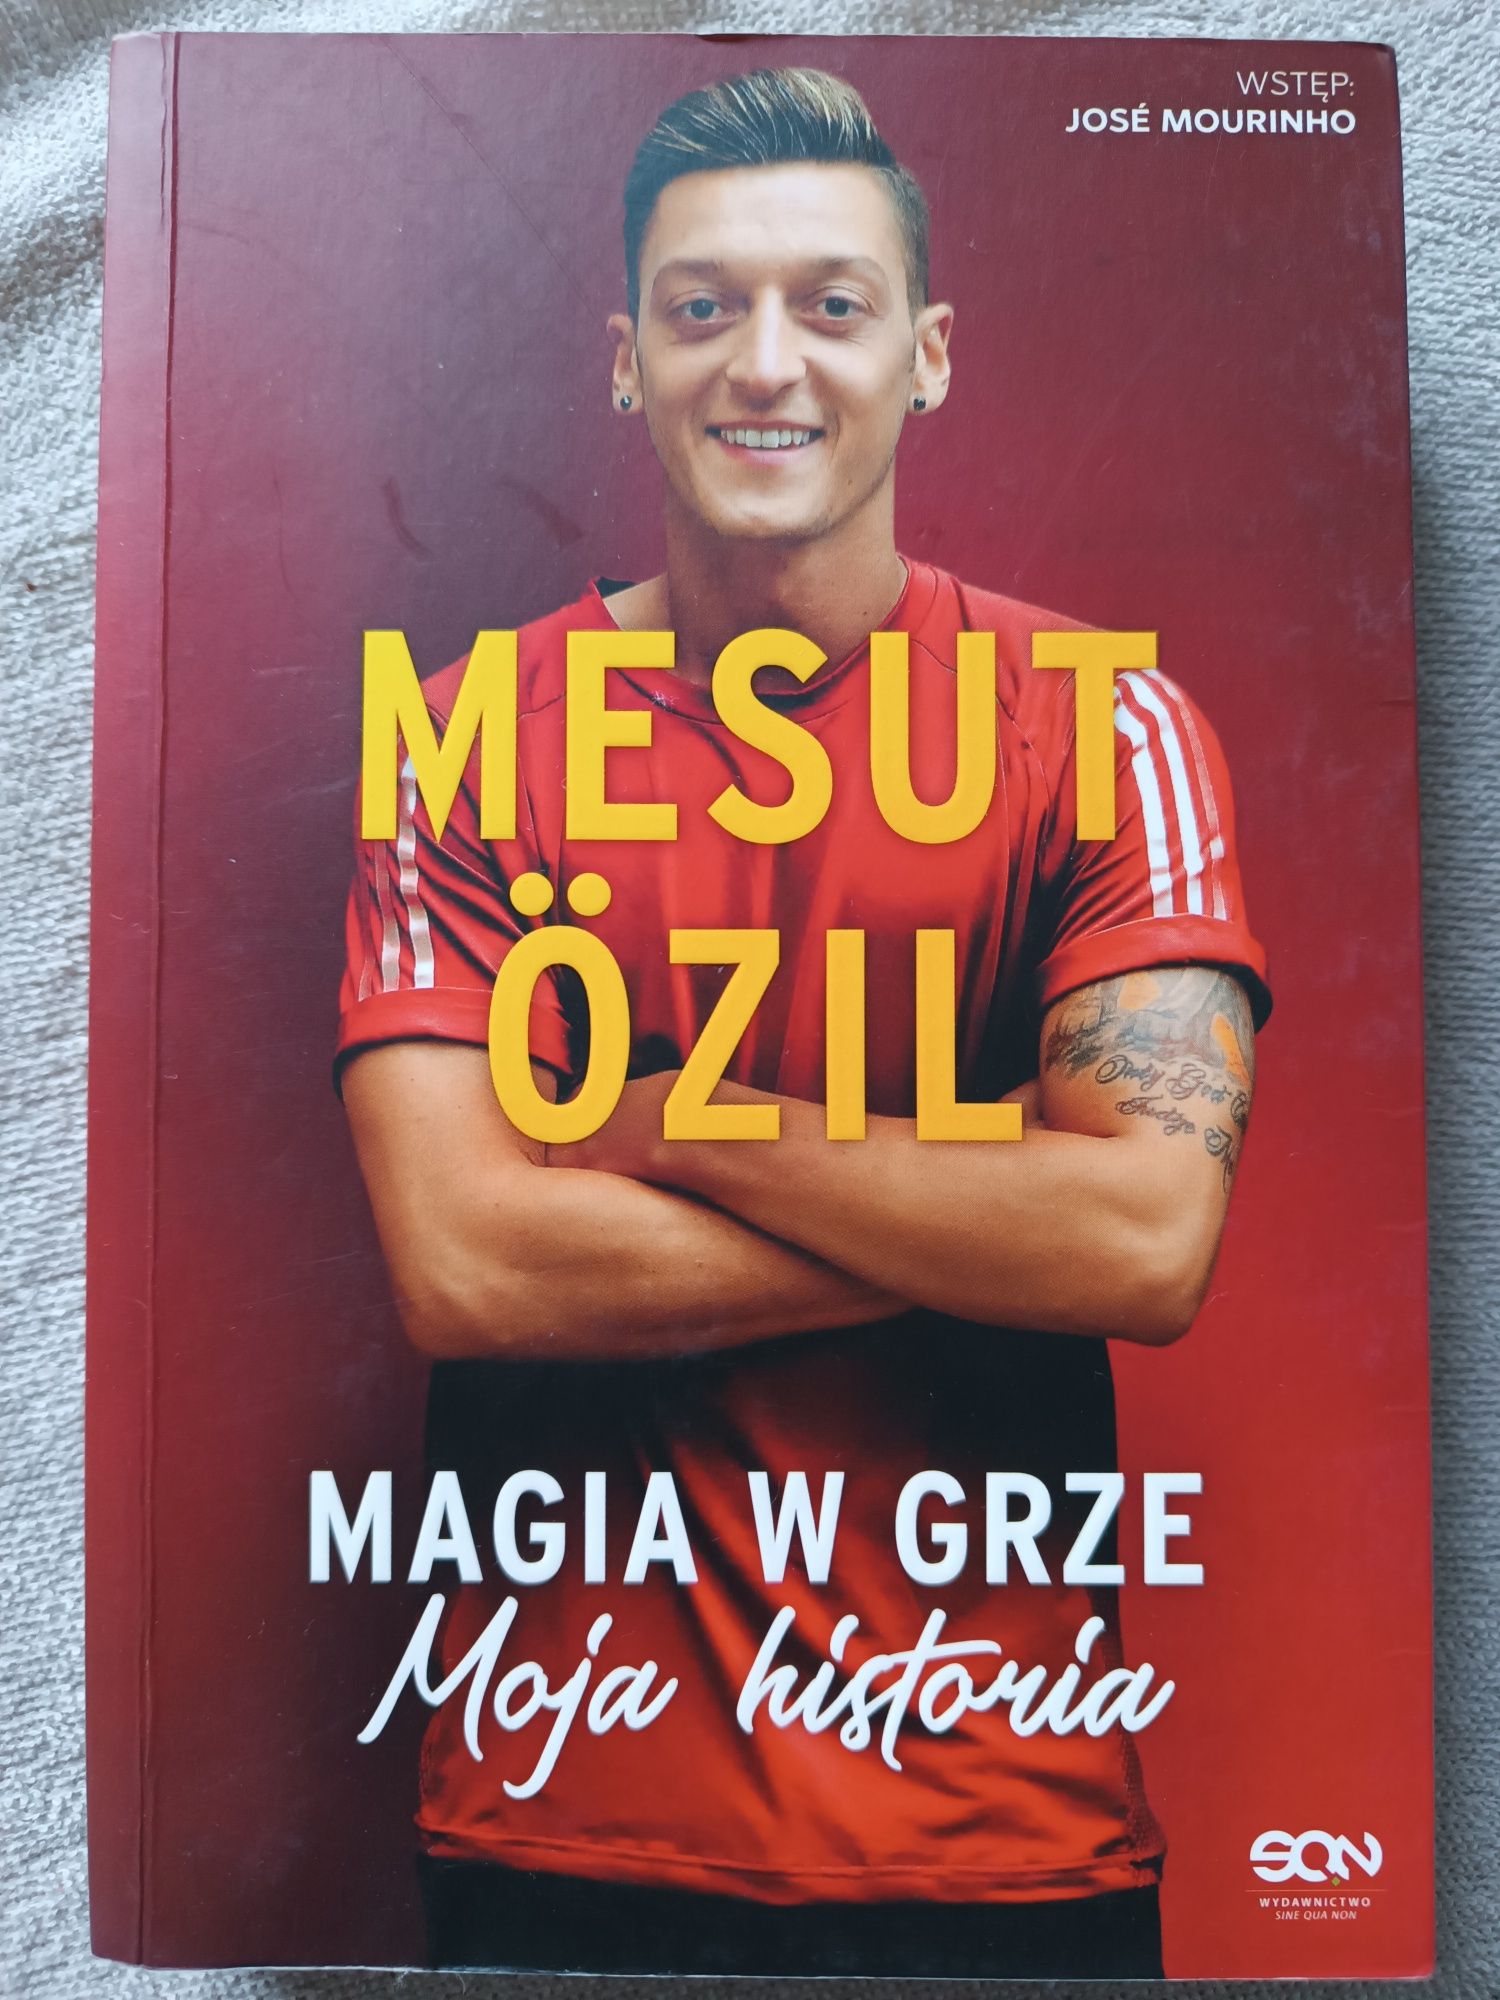 Mesut Ozil Magia w grze